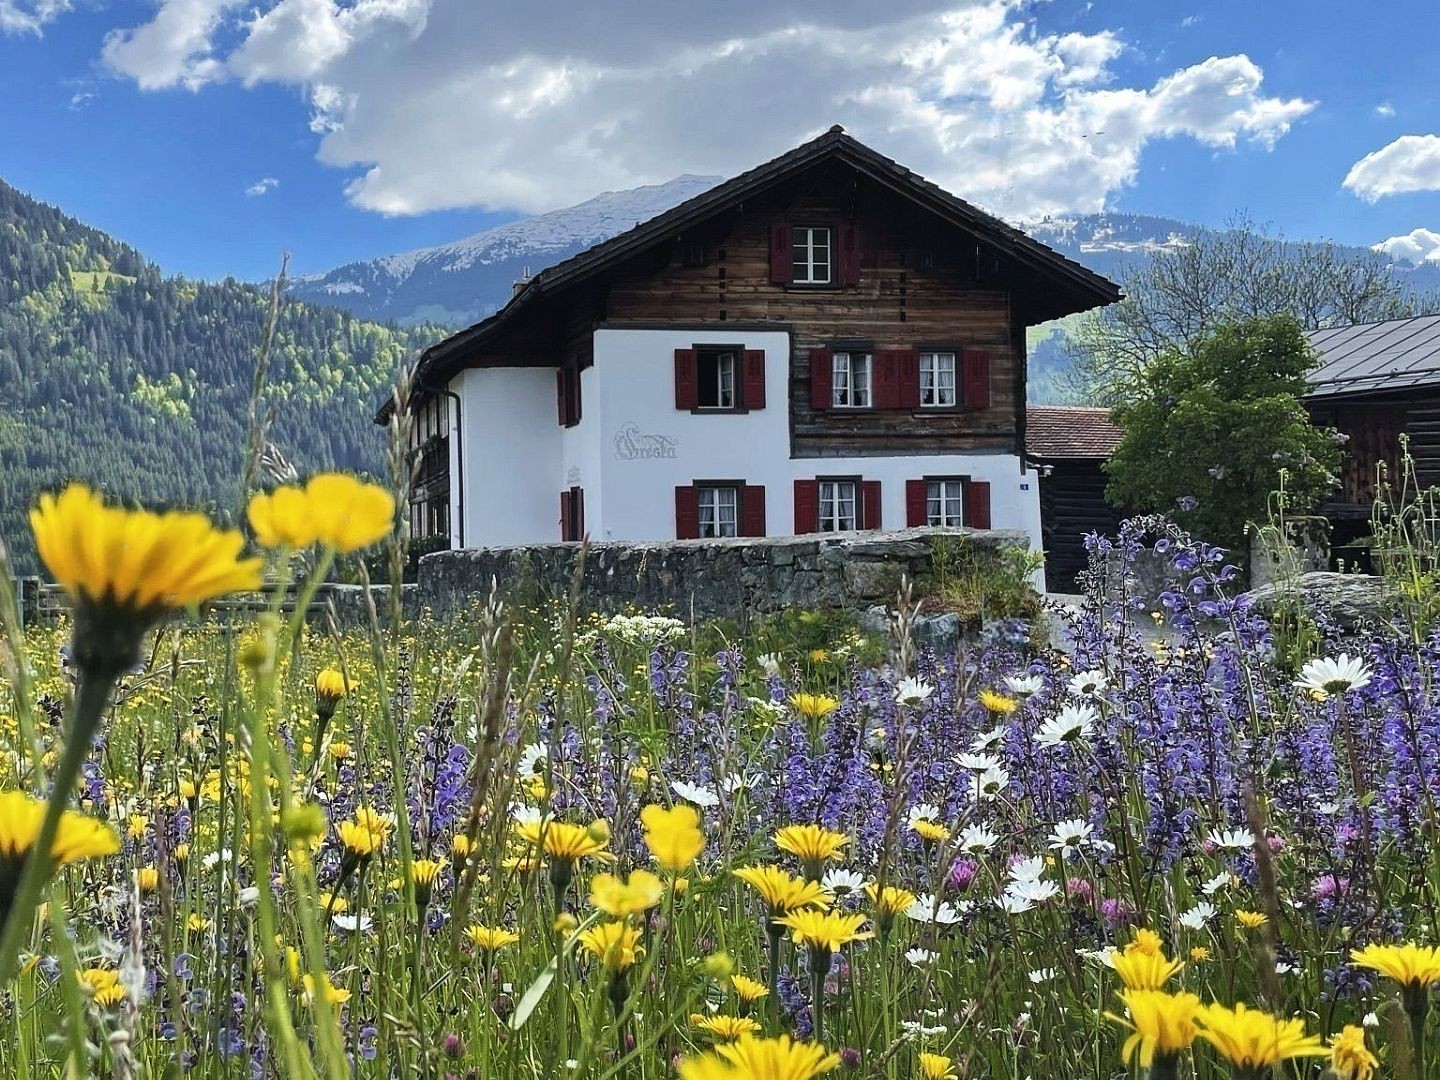 Ferienhaus Cresta Pany-Luzein, (Luzein).  Ferienwohnung in der Schweiz